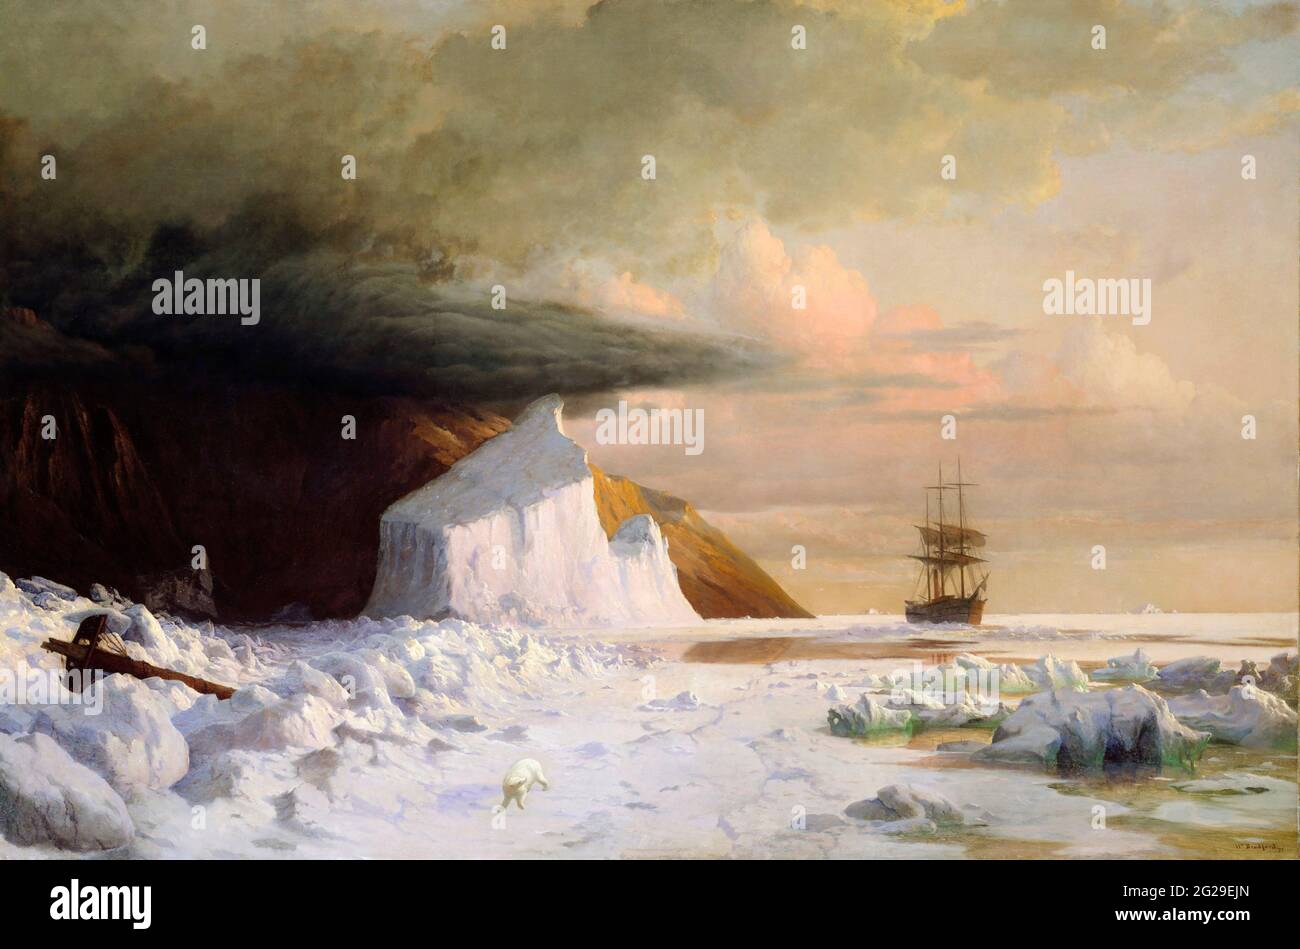 Un été arctique : ennuyeux à travers le Pack dans la baie Melville par William Bradford (1823-1892), huile sur toile, 1871 Banque D'Images